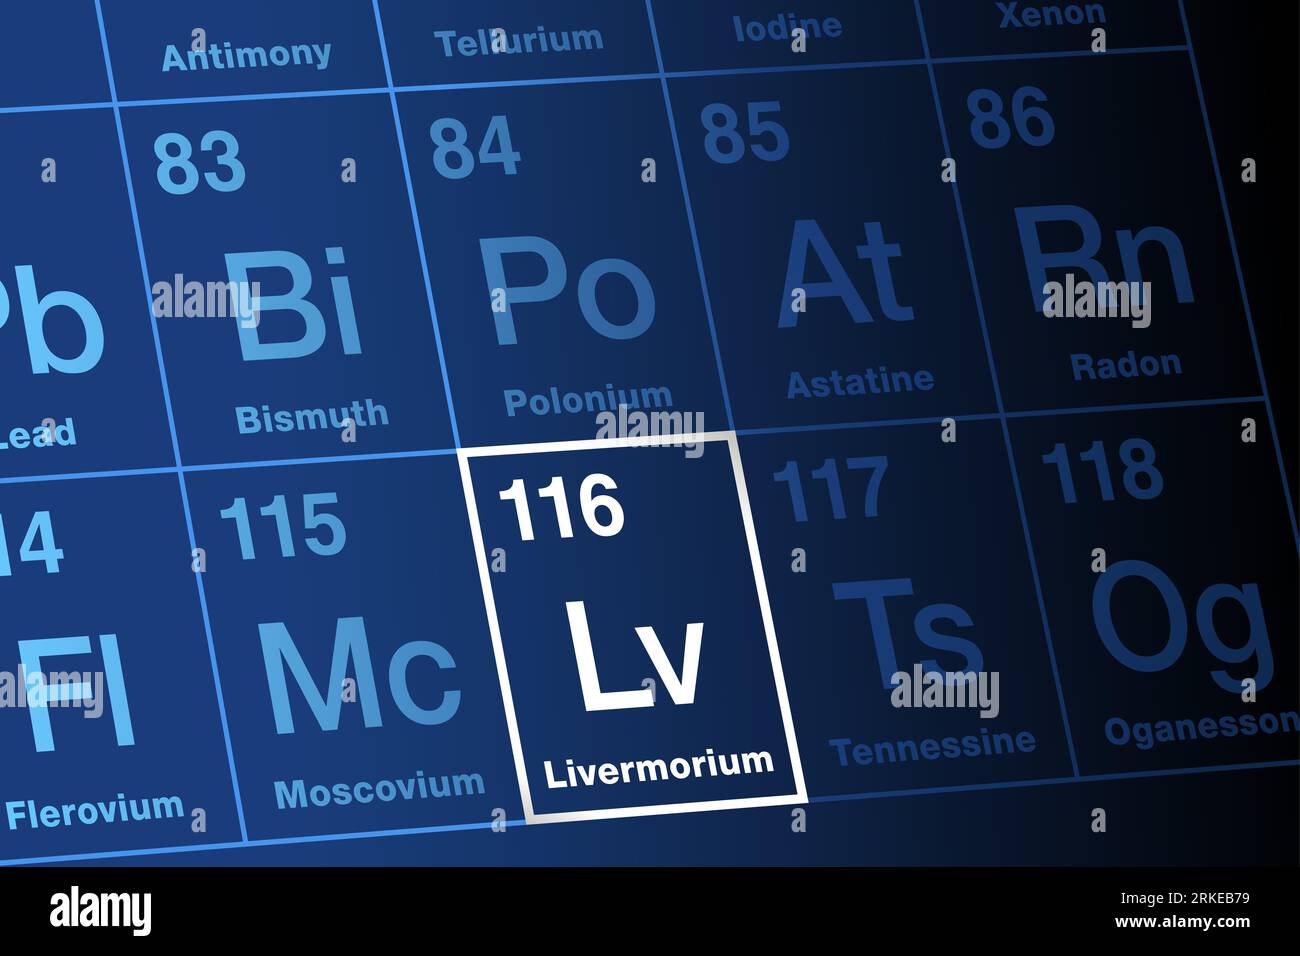 Livermorium zum Periodensystem der Elemente. Extrem radioaktives, superschweres, synthetisches Transactinidelement. Symbol LV, Atomzahl 116. Stockfoto